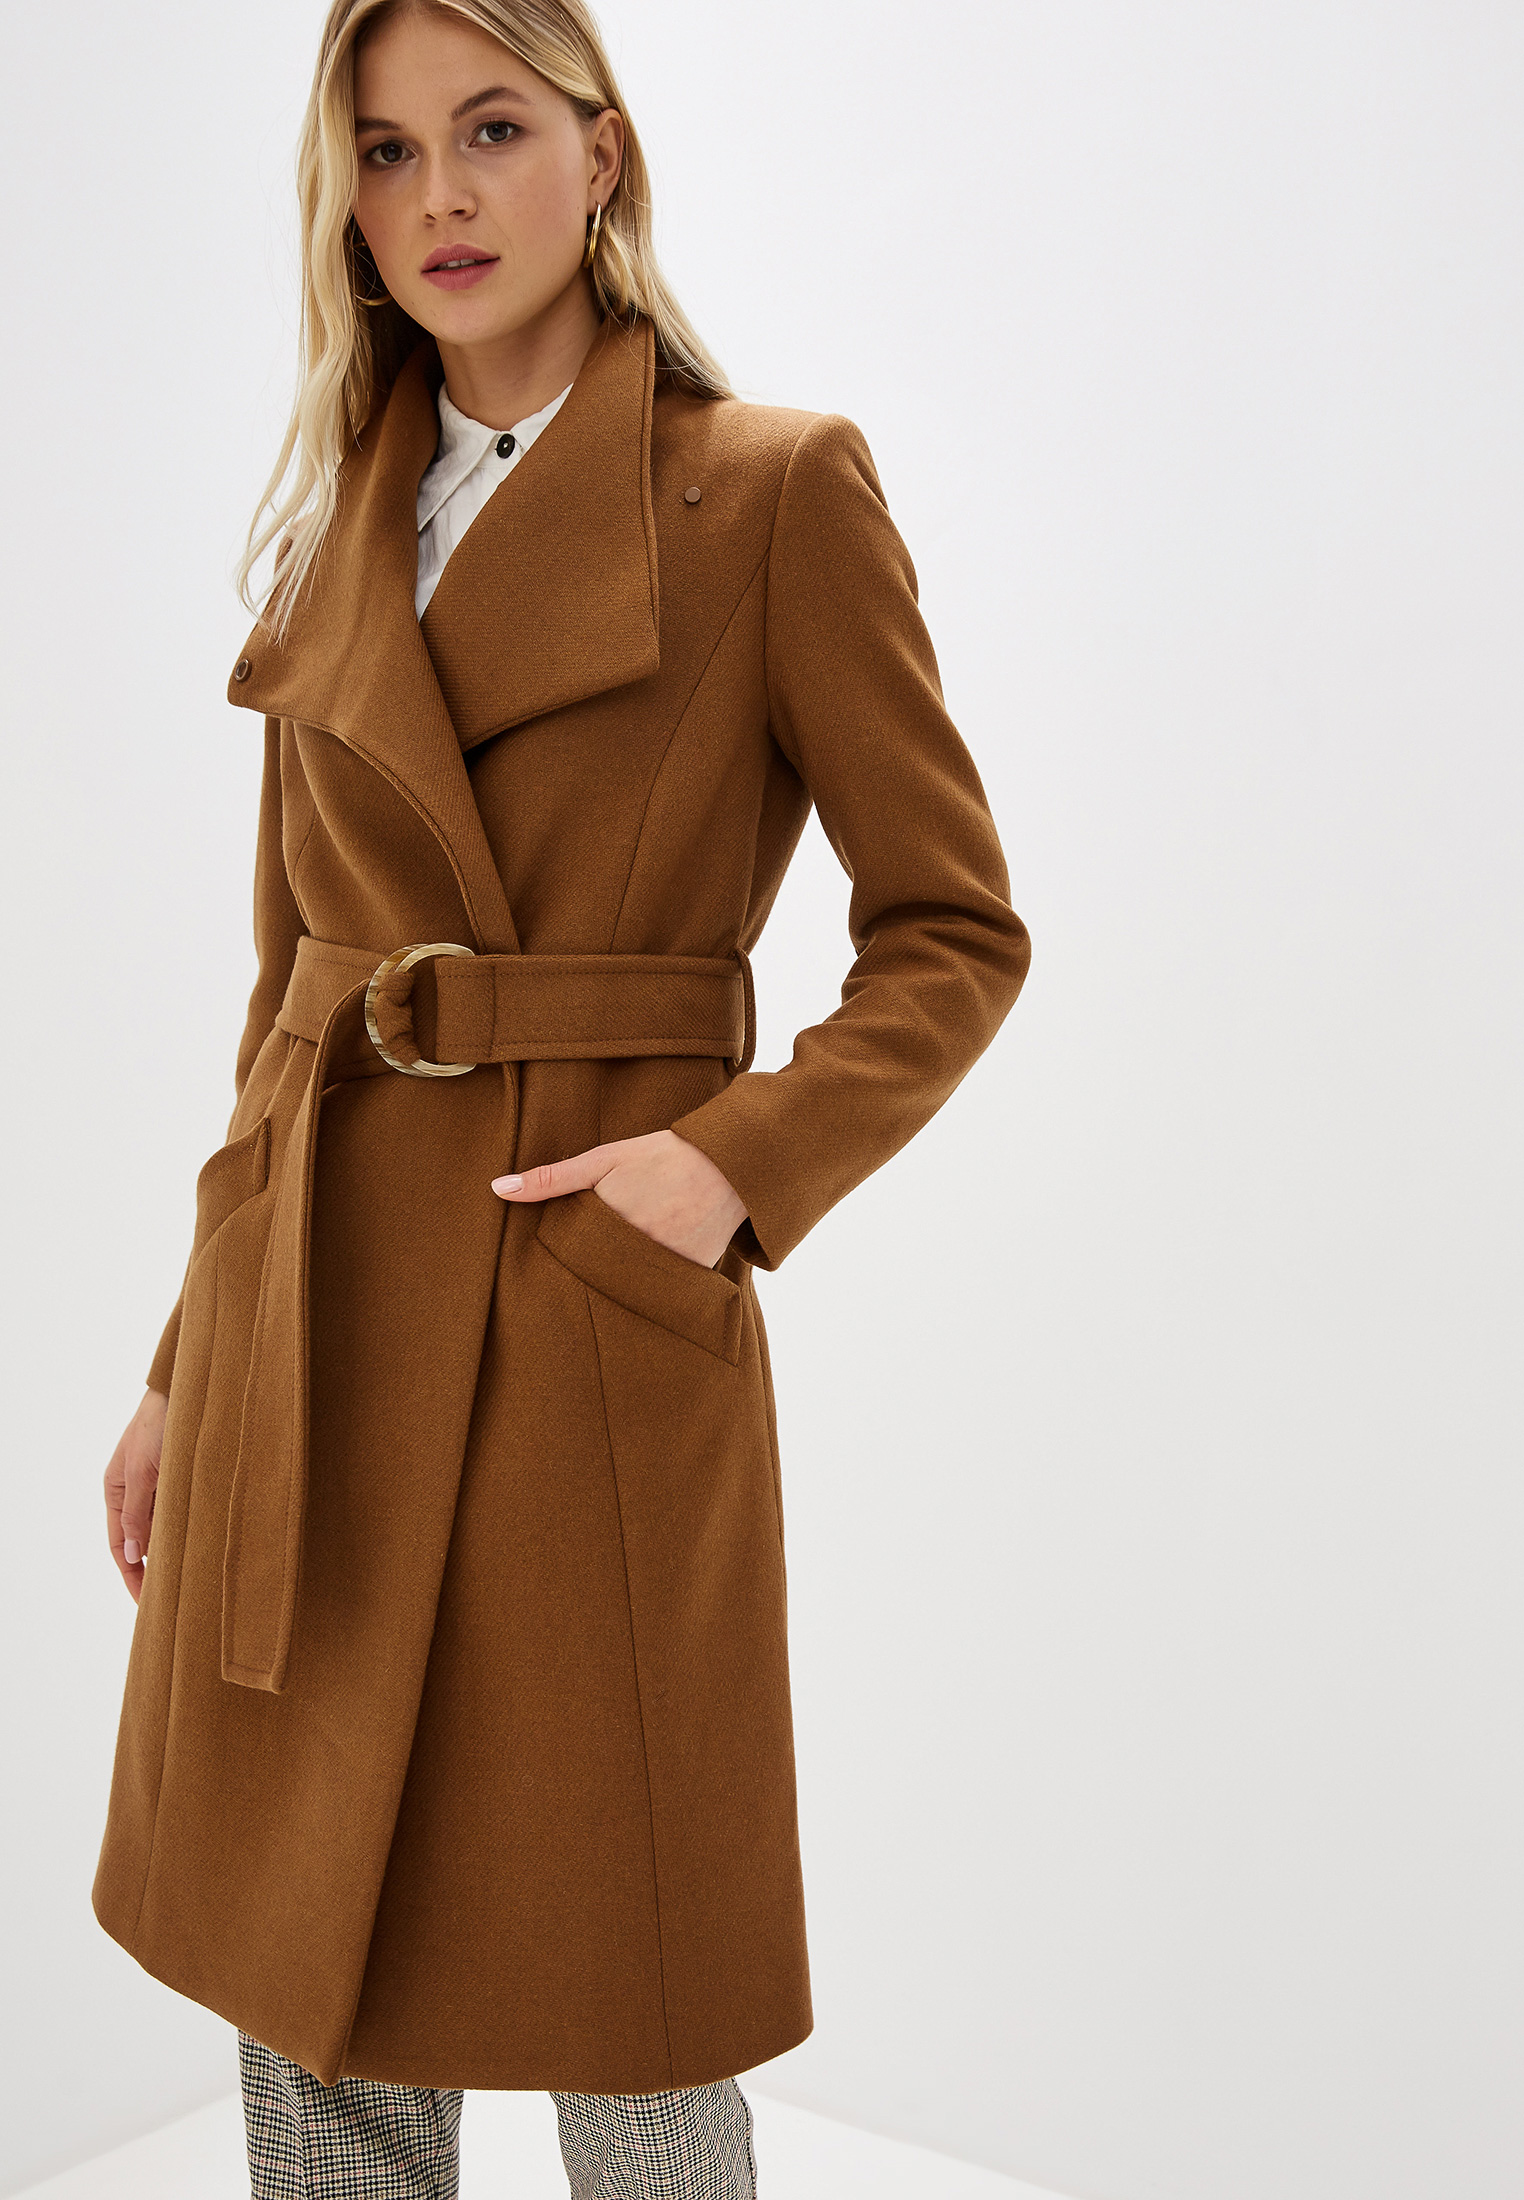 Купить коричневое пальто. Пальто Mango Venus. Пальто Mango коричневое. Коричневое пальто. Коричневое пальто женское.